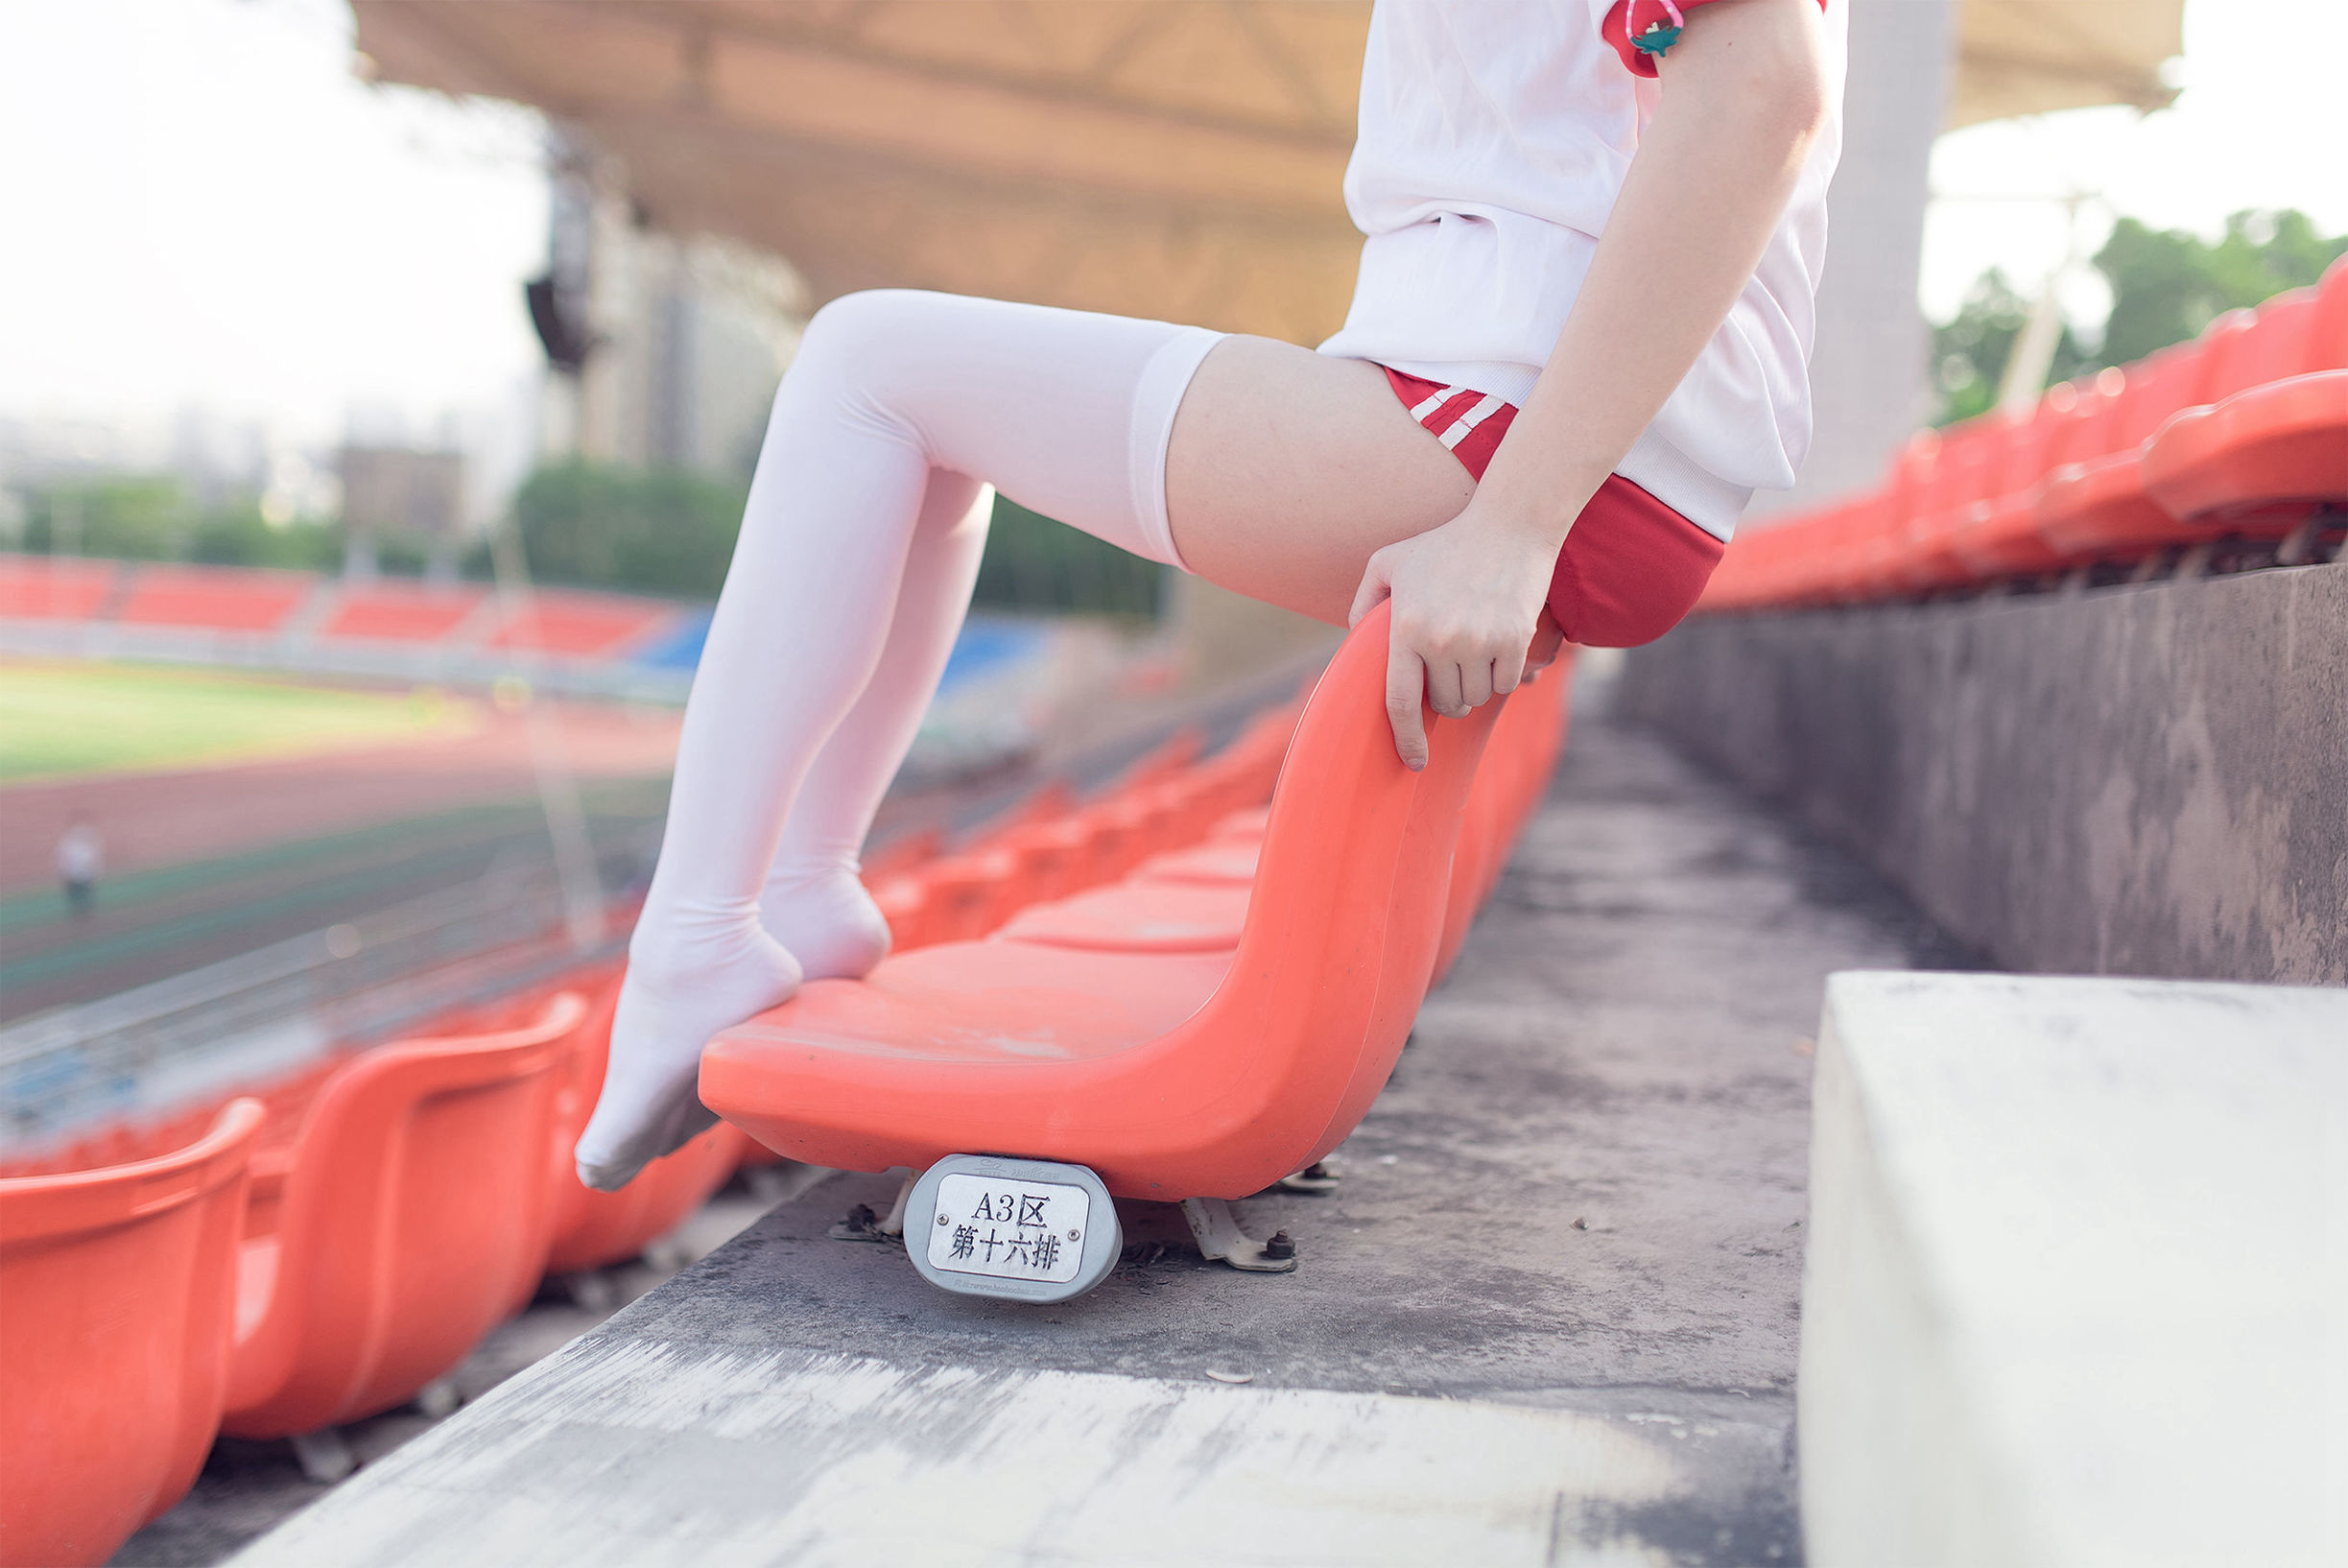 [风之领域] NO.112 运动场上的白丝体操服少女-番茄美图